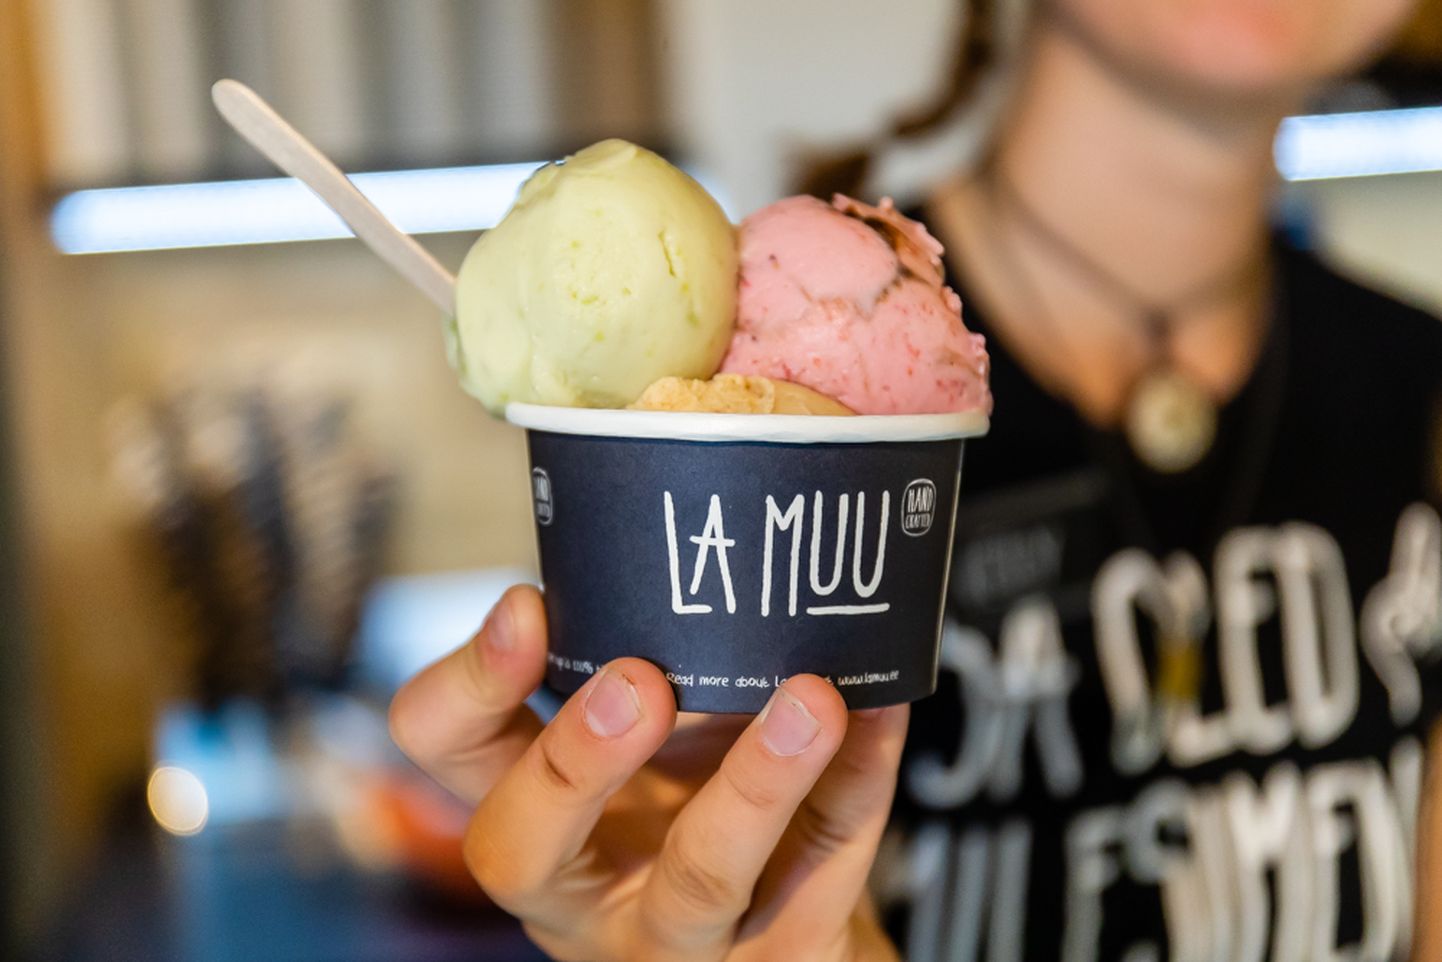 La Muu jäätisekohvik Tallinnas.